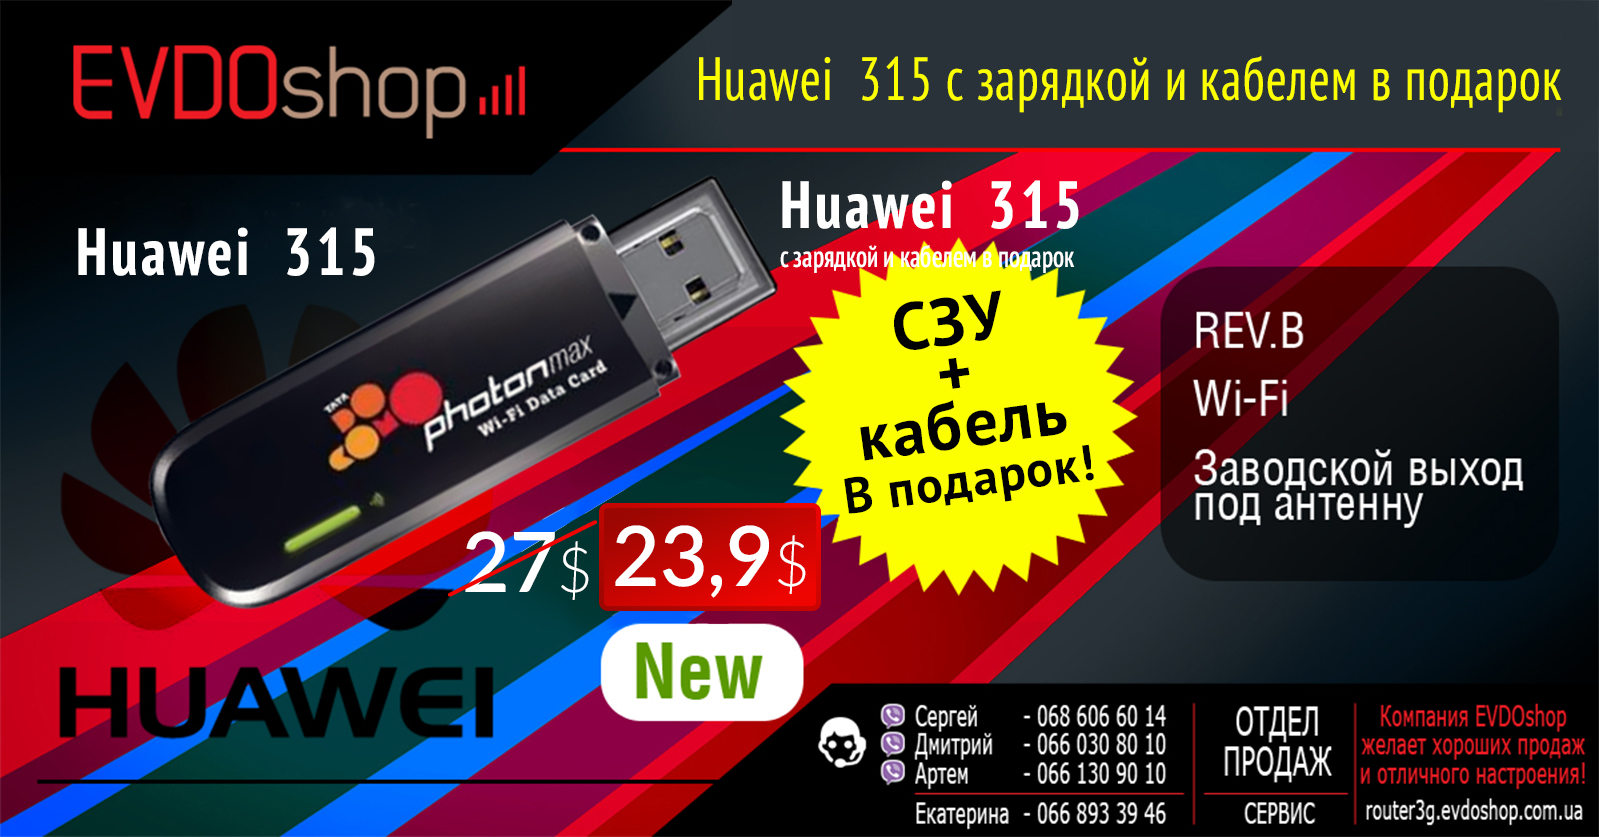 21860 Huawei ec 315 New, Оптом По 23,9$, СЗУ + Кабель в Подарок!